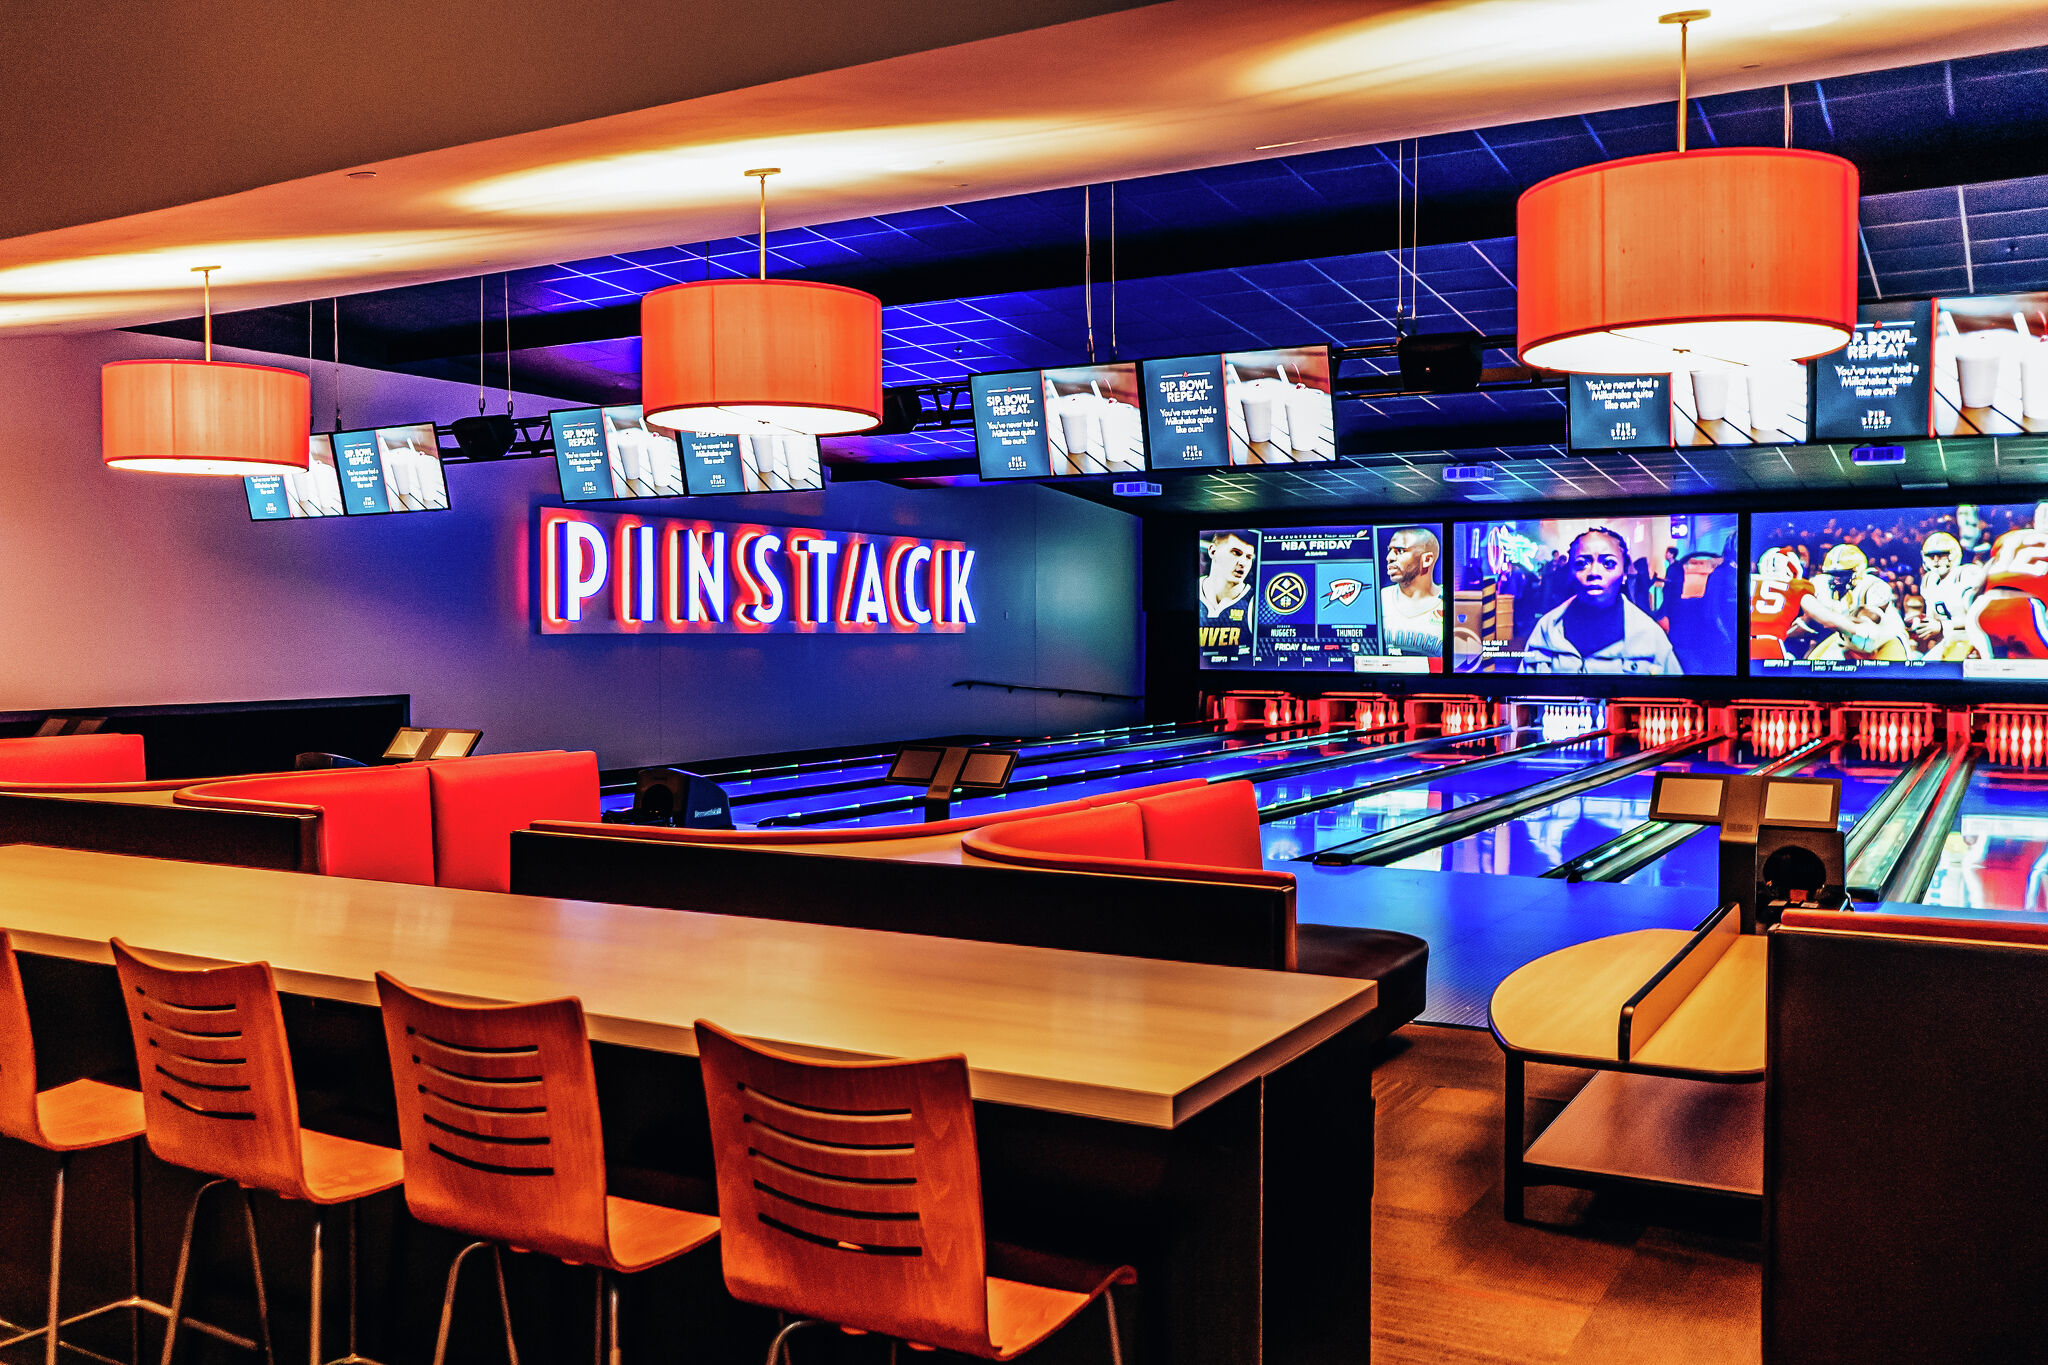 Pinstack-Bowlinghalle plant zweiten Standort in San Antonio